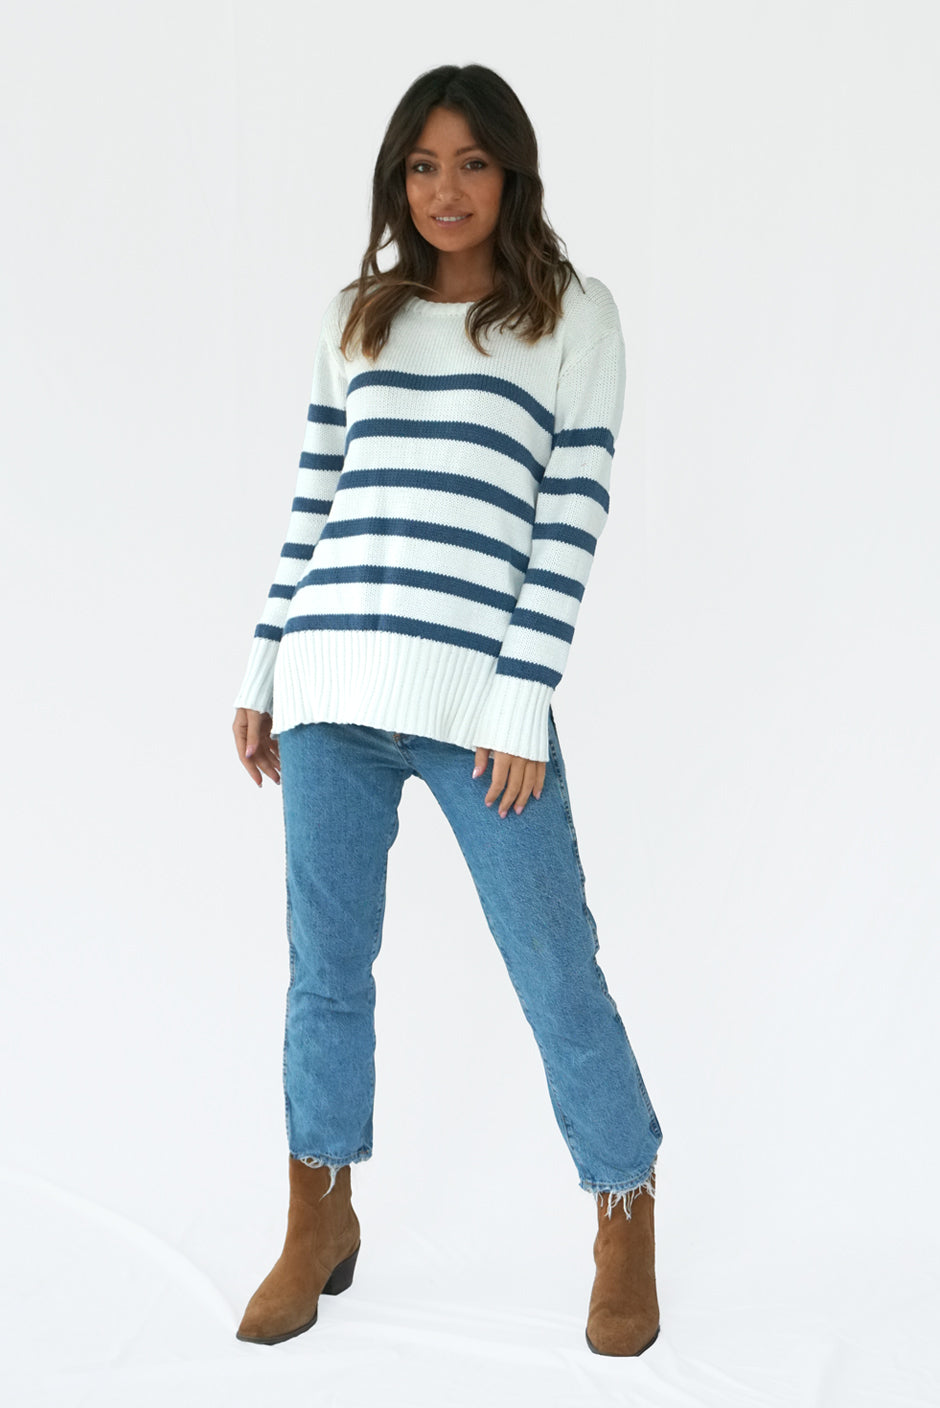 Simple Seamless Sweater Pattern – Darn Good Yarn